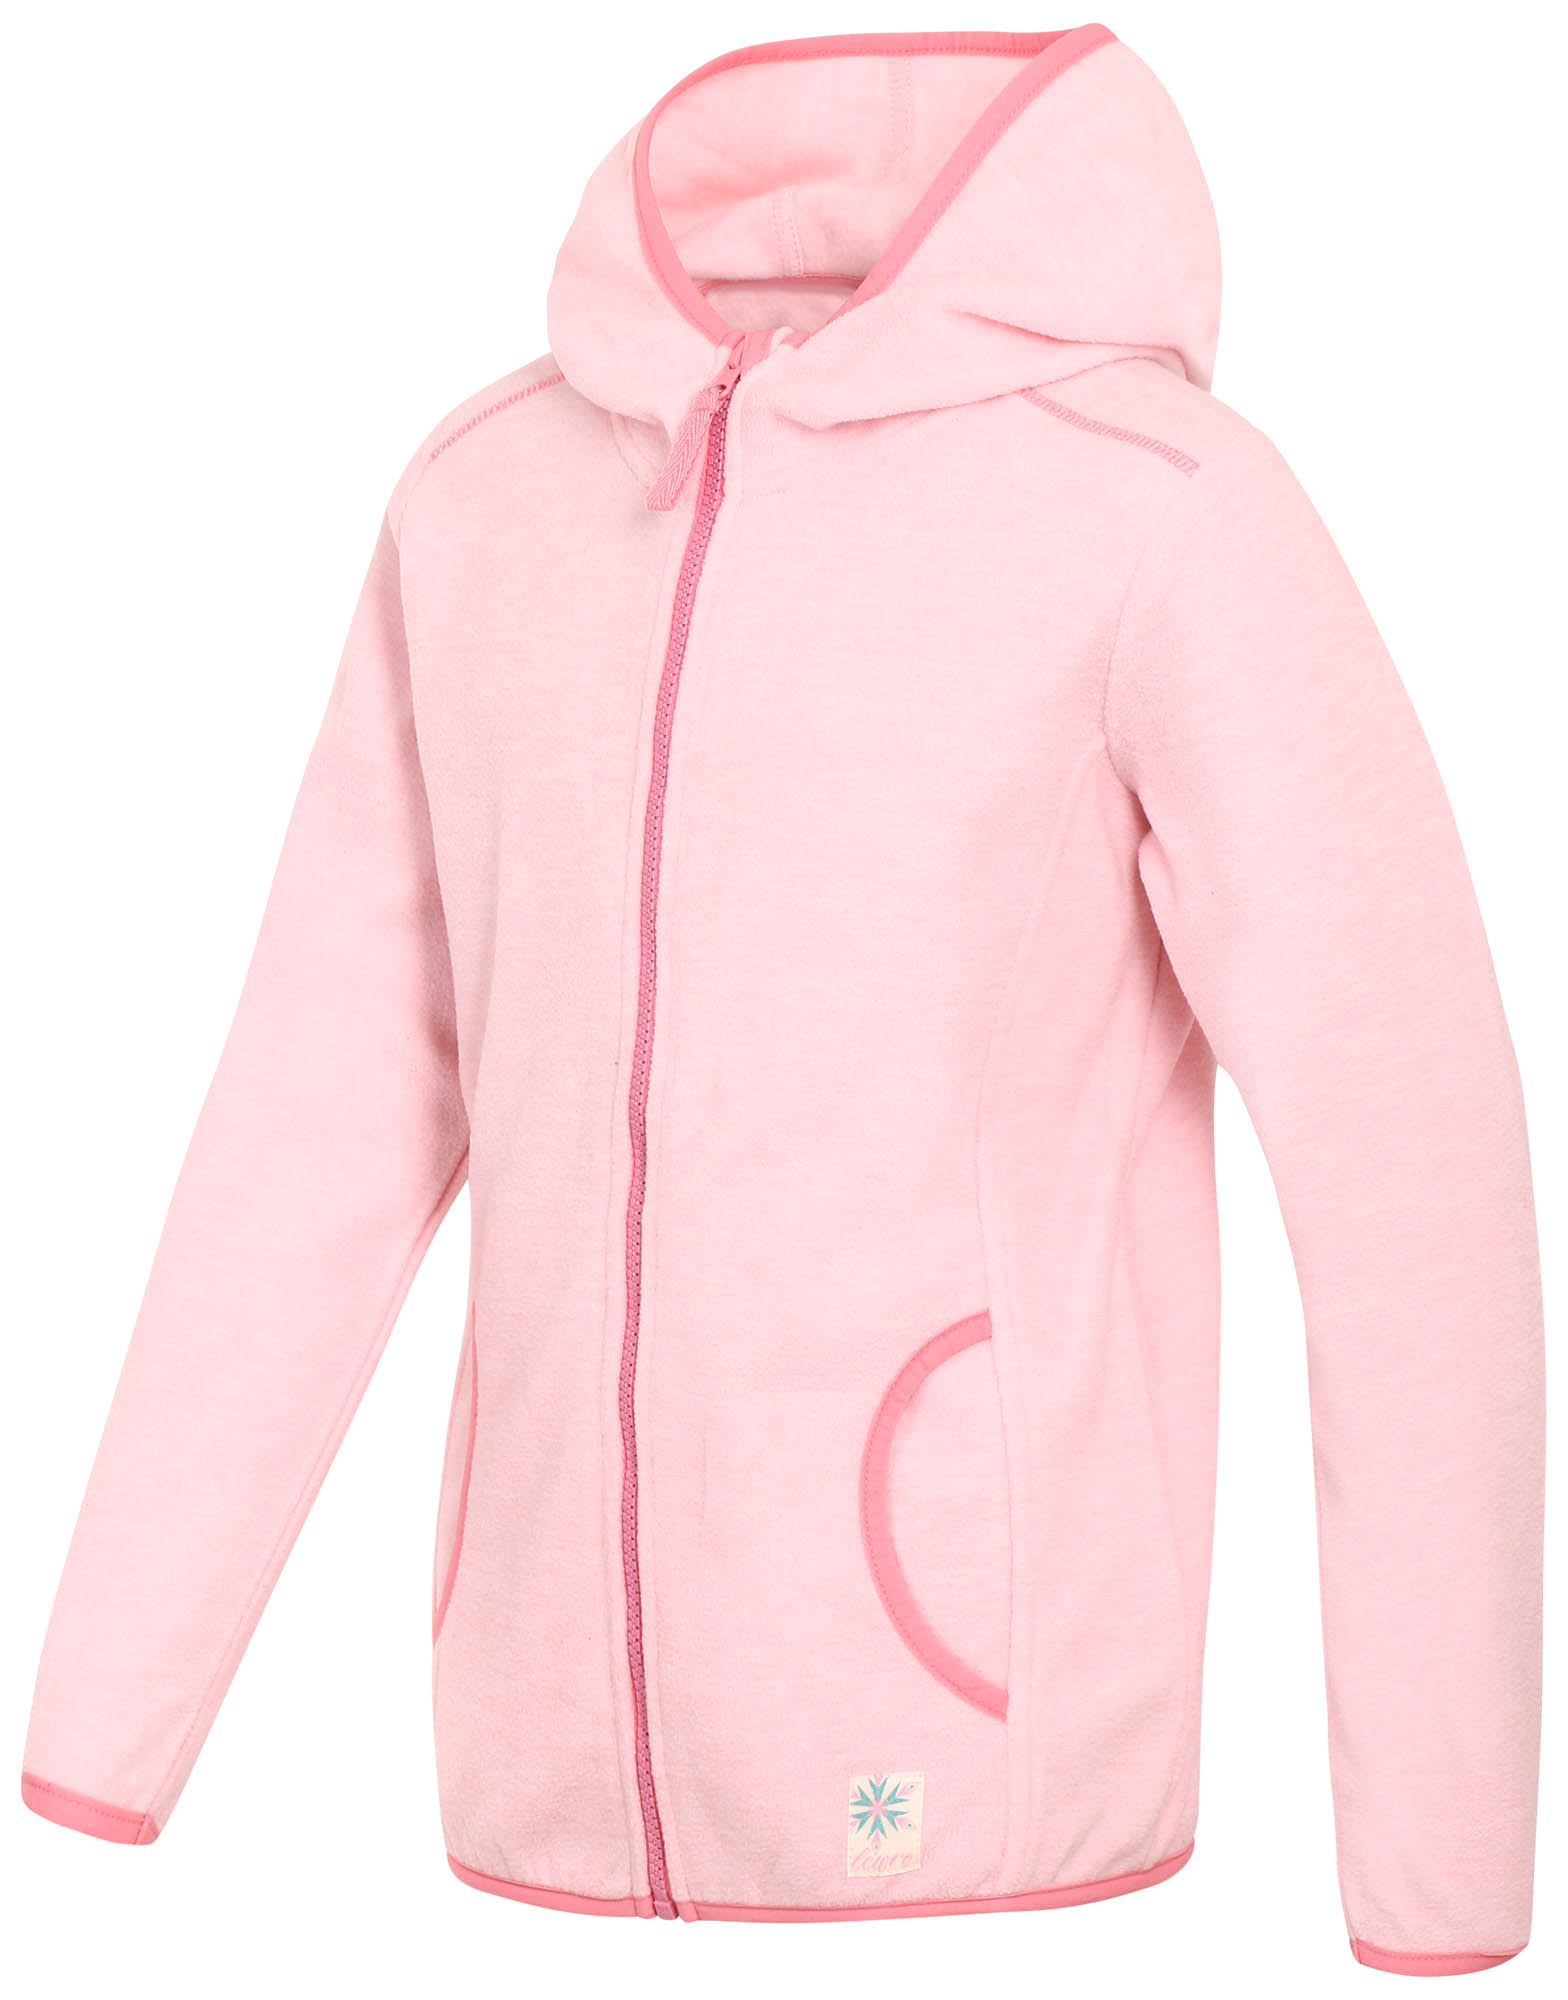 Children's fleece hoodie